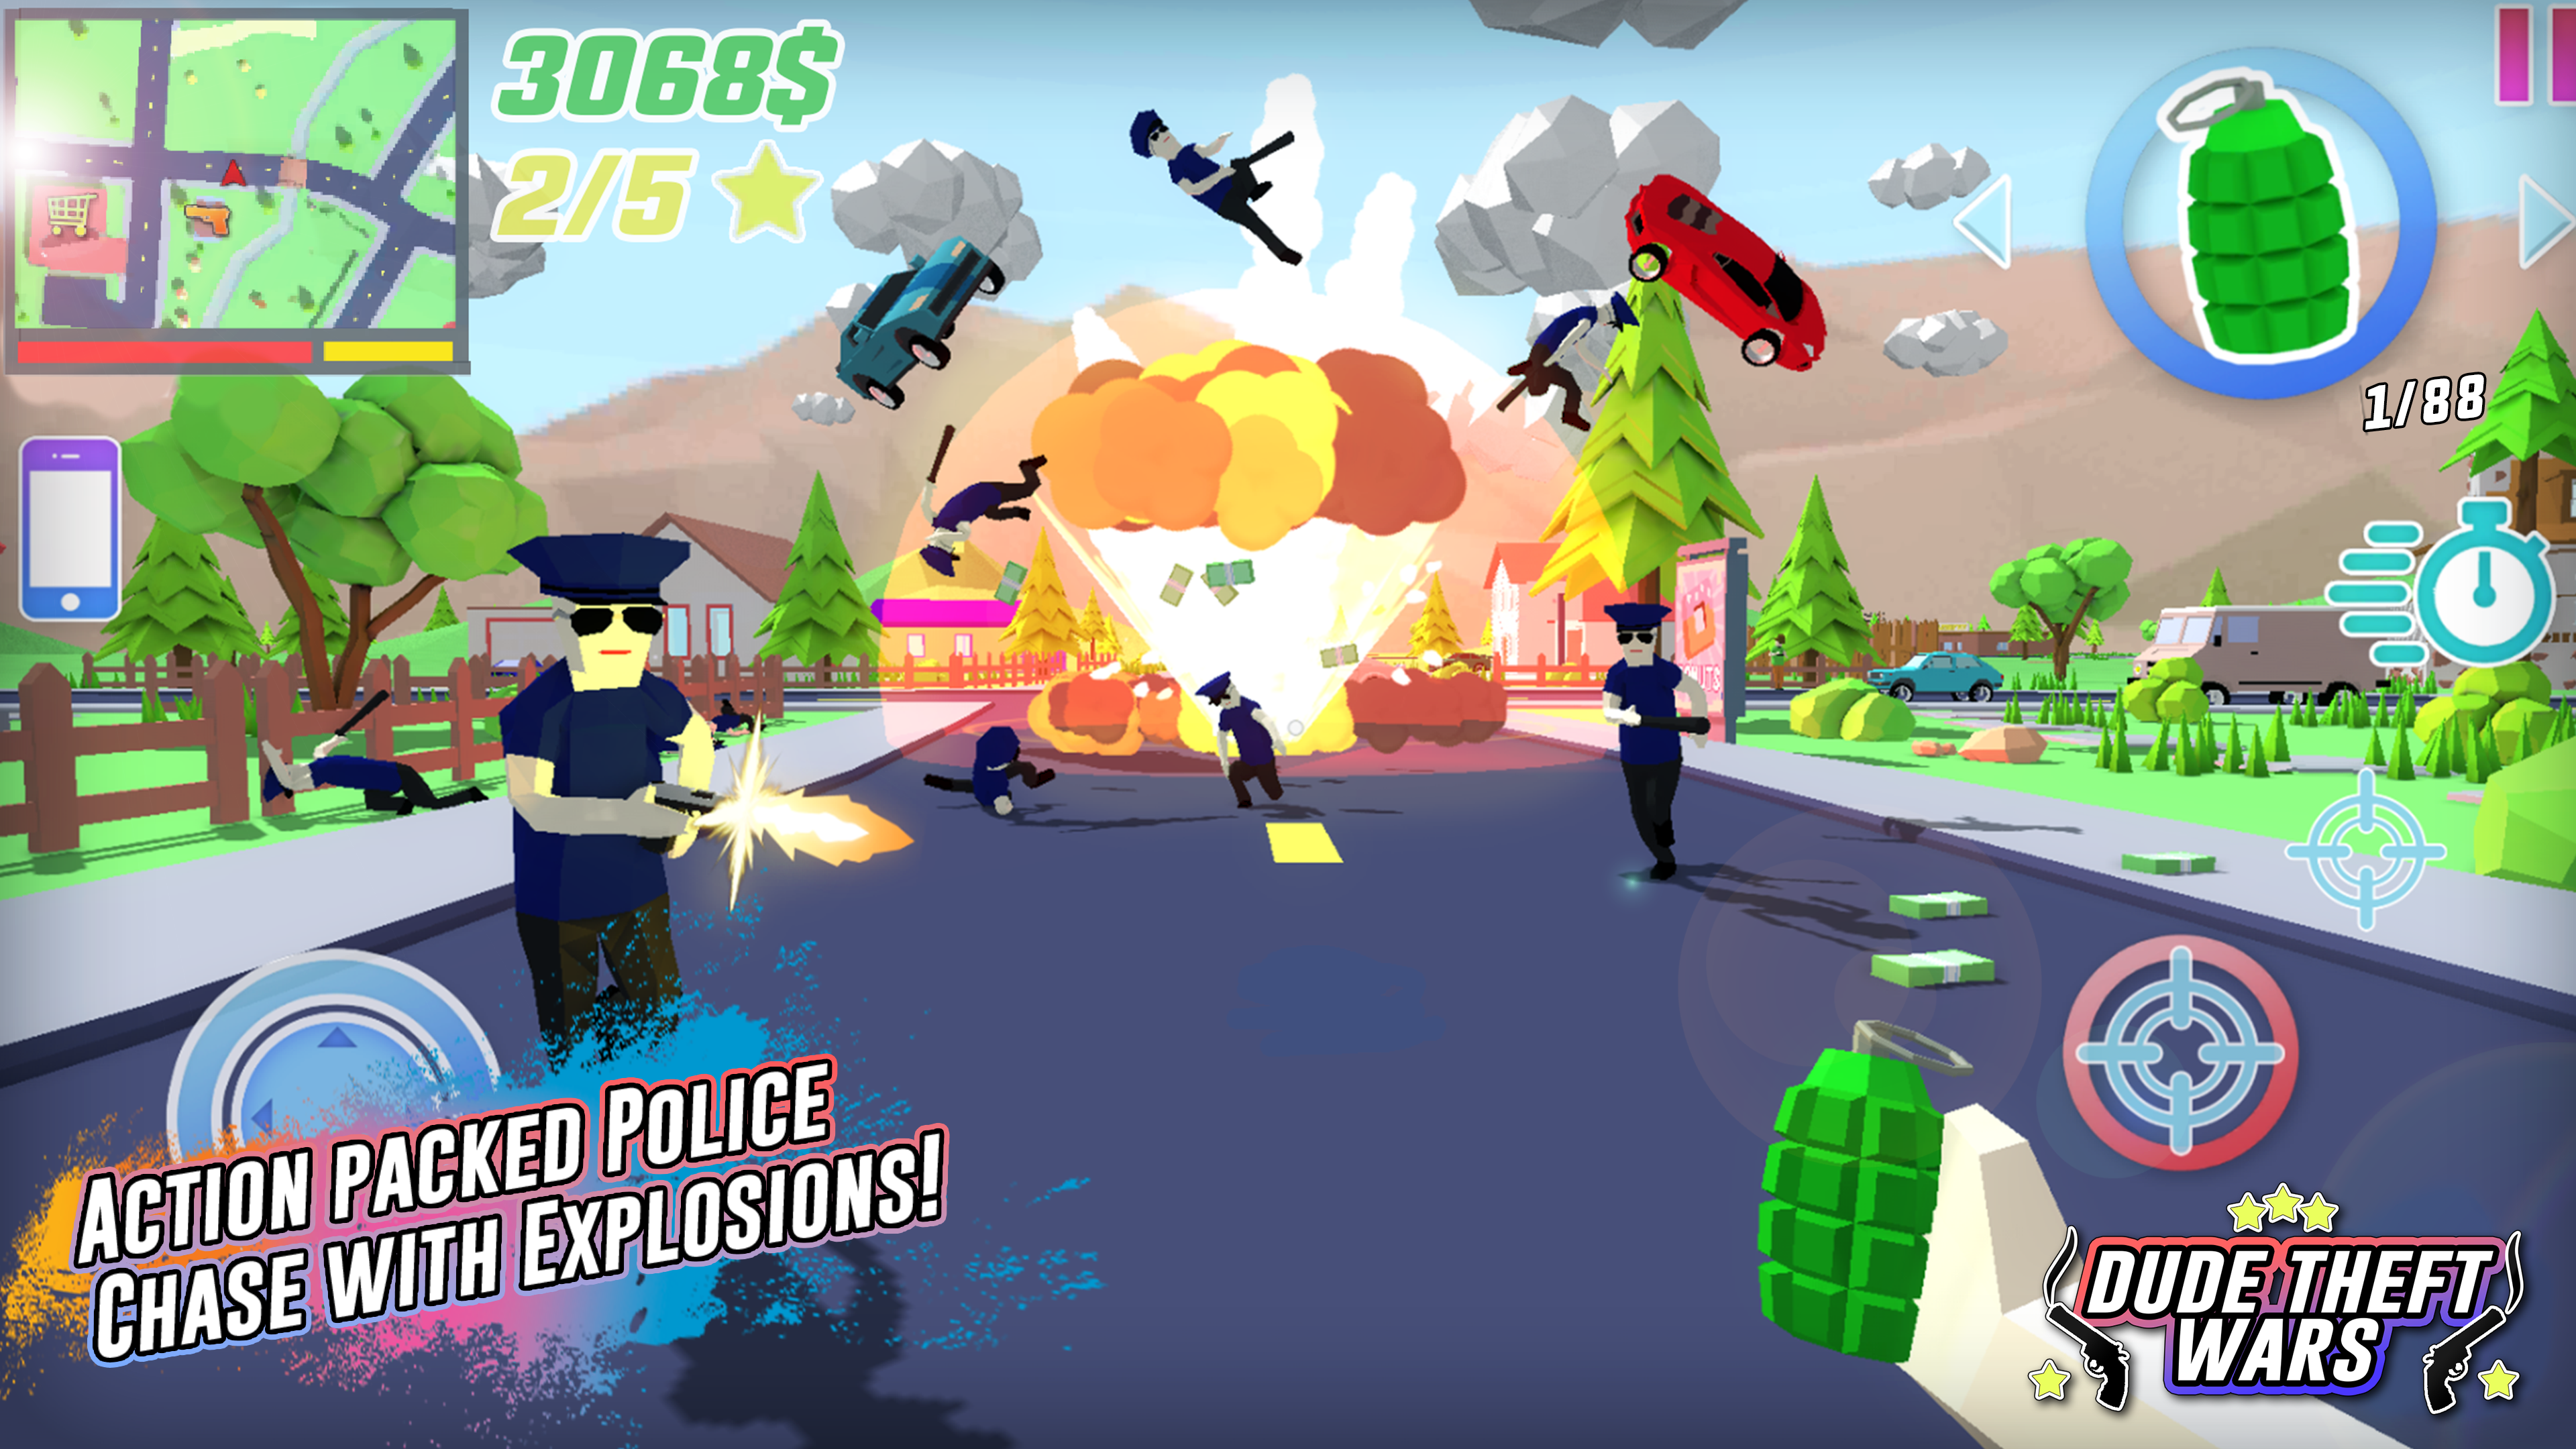 Screenshot 1 of Dude Theft Wars Shooting Games 0.9.0.9c2